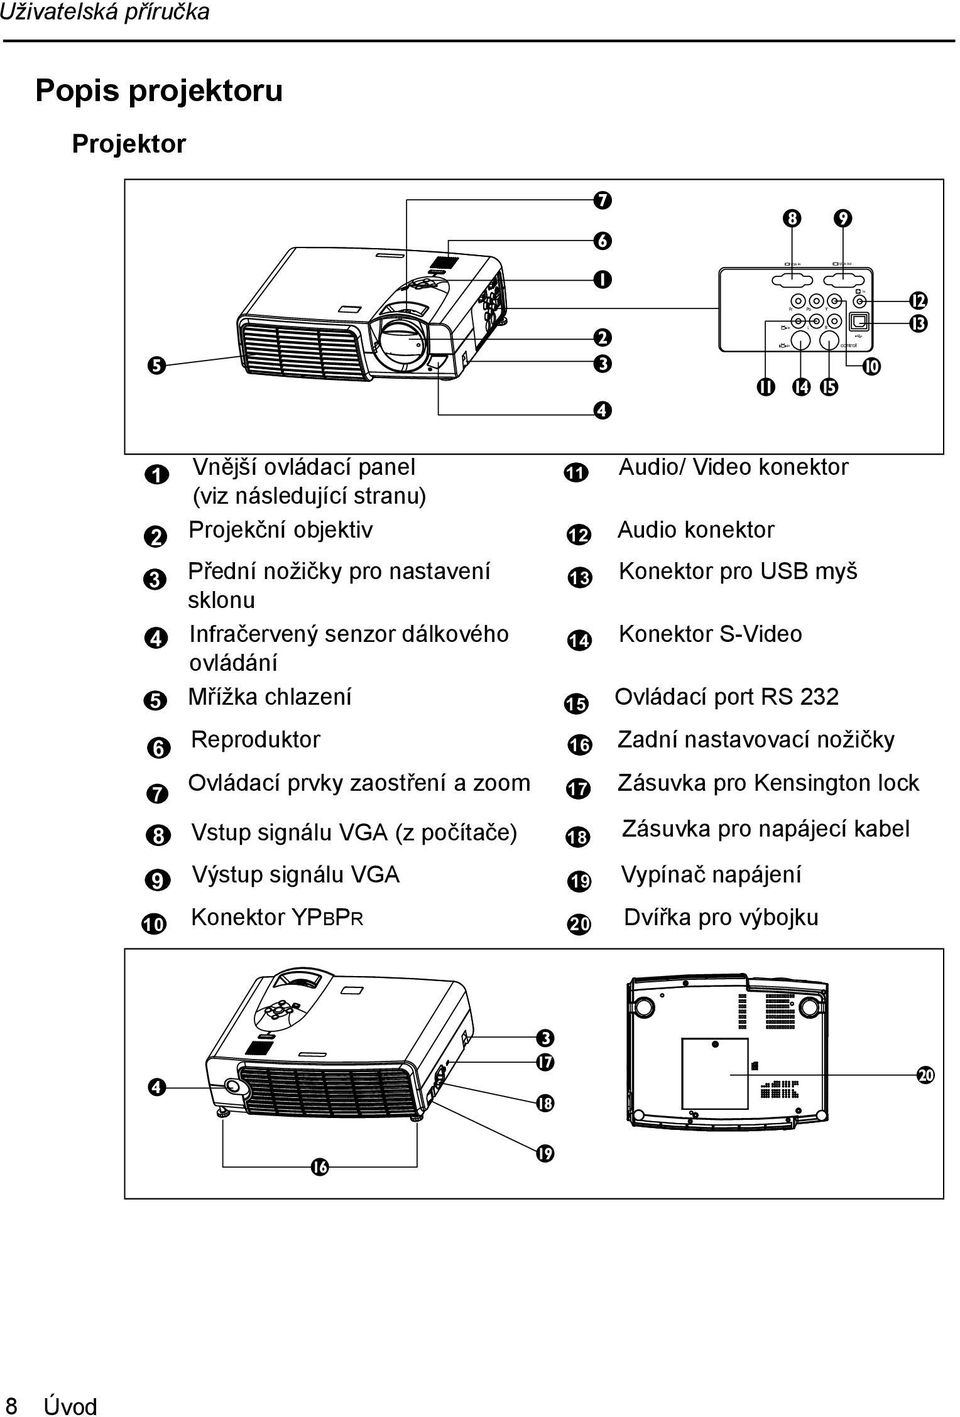 232 1 11 2 12 3 13 4 14 5 15 Reproduktor 6 16 Ovládací prvky zaostření a zoom 7 17 Vstup signálu VGA (z počítače) 8 18 Výstup signálu VGA 9